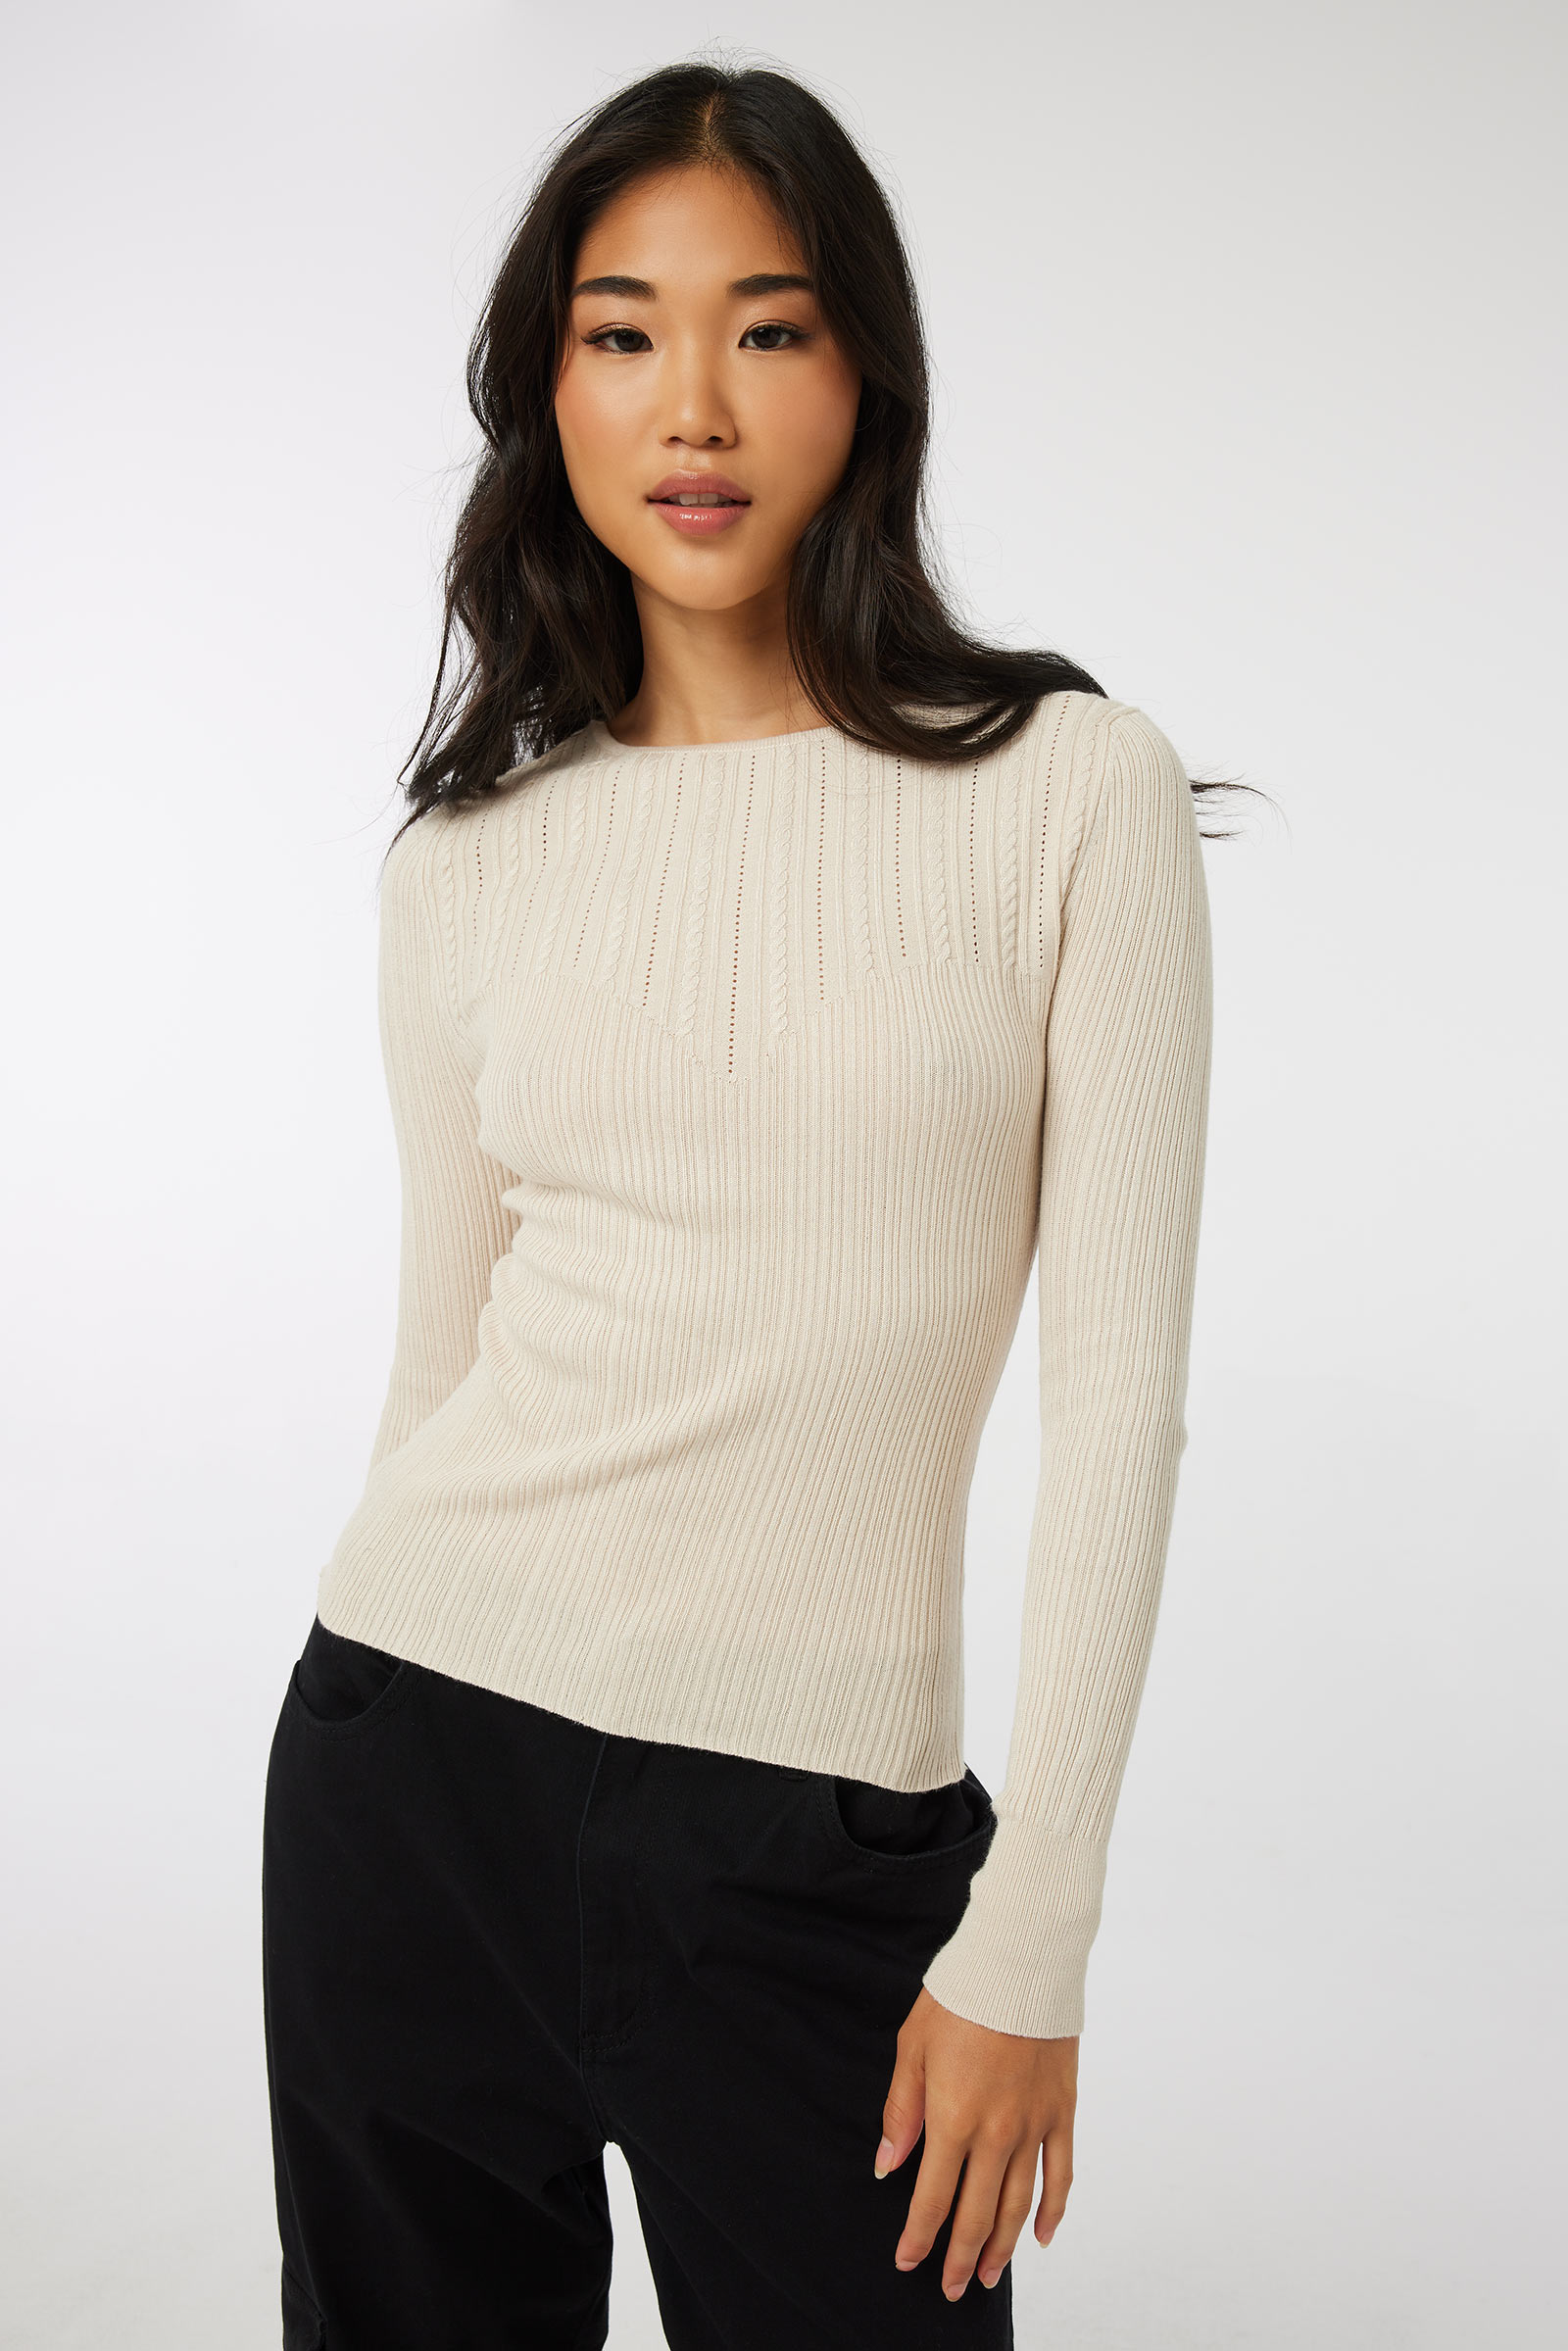 Ardene Bustier-Like Fine Knit Sweater in Beige | Size Large | Polyester/Rayon